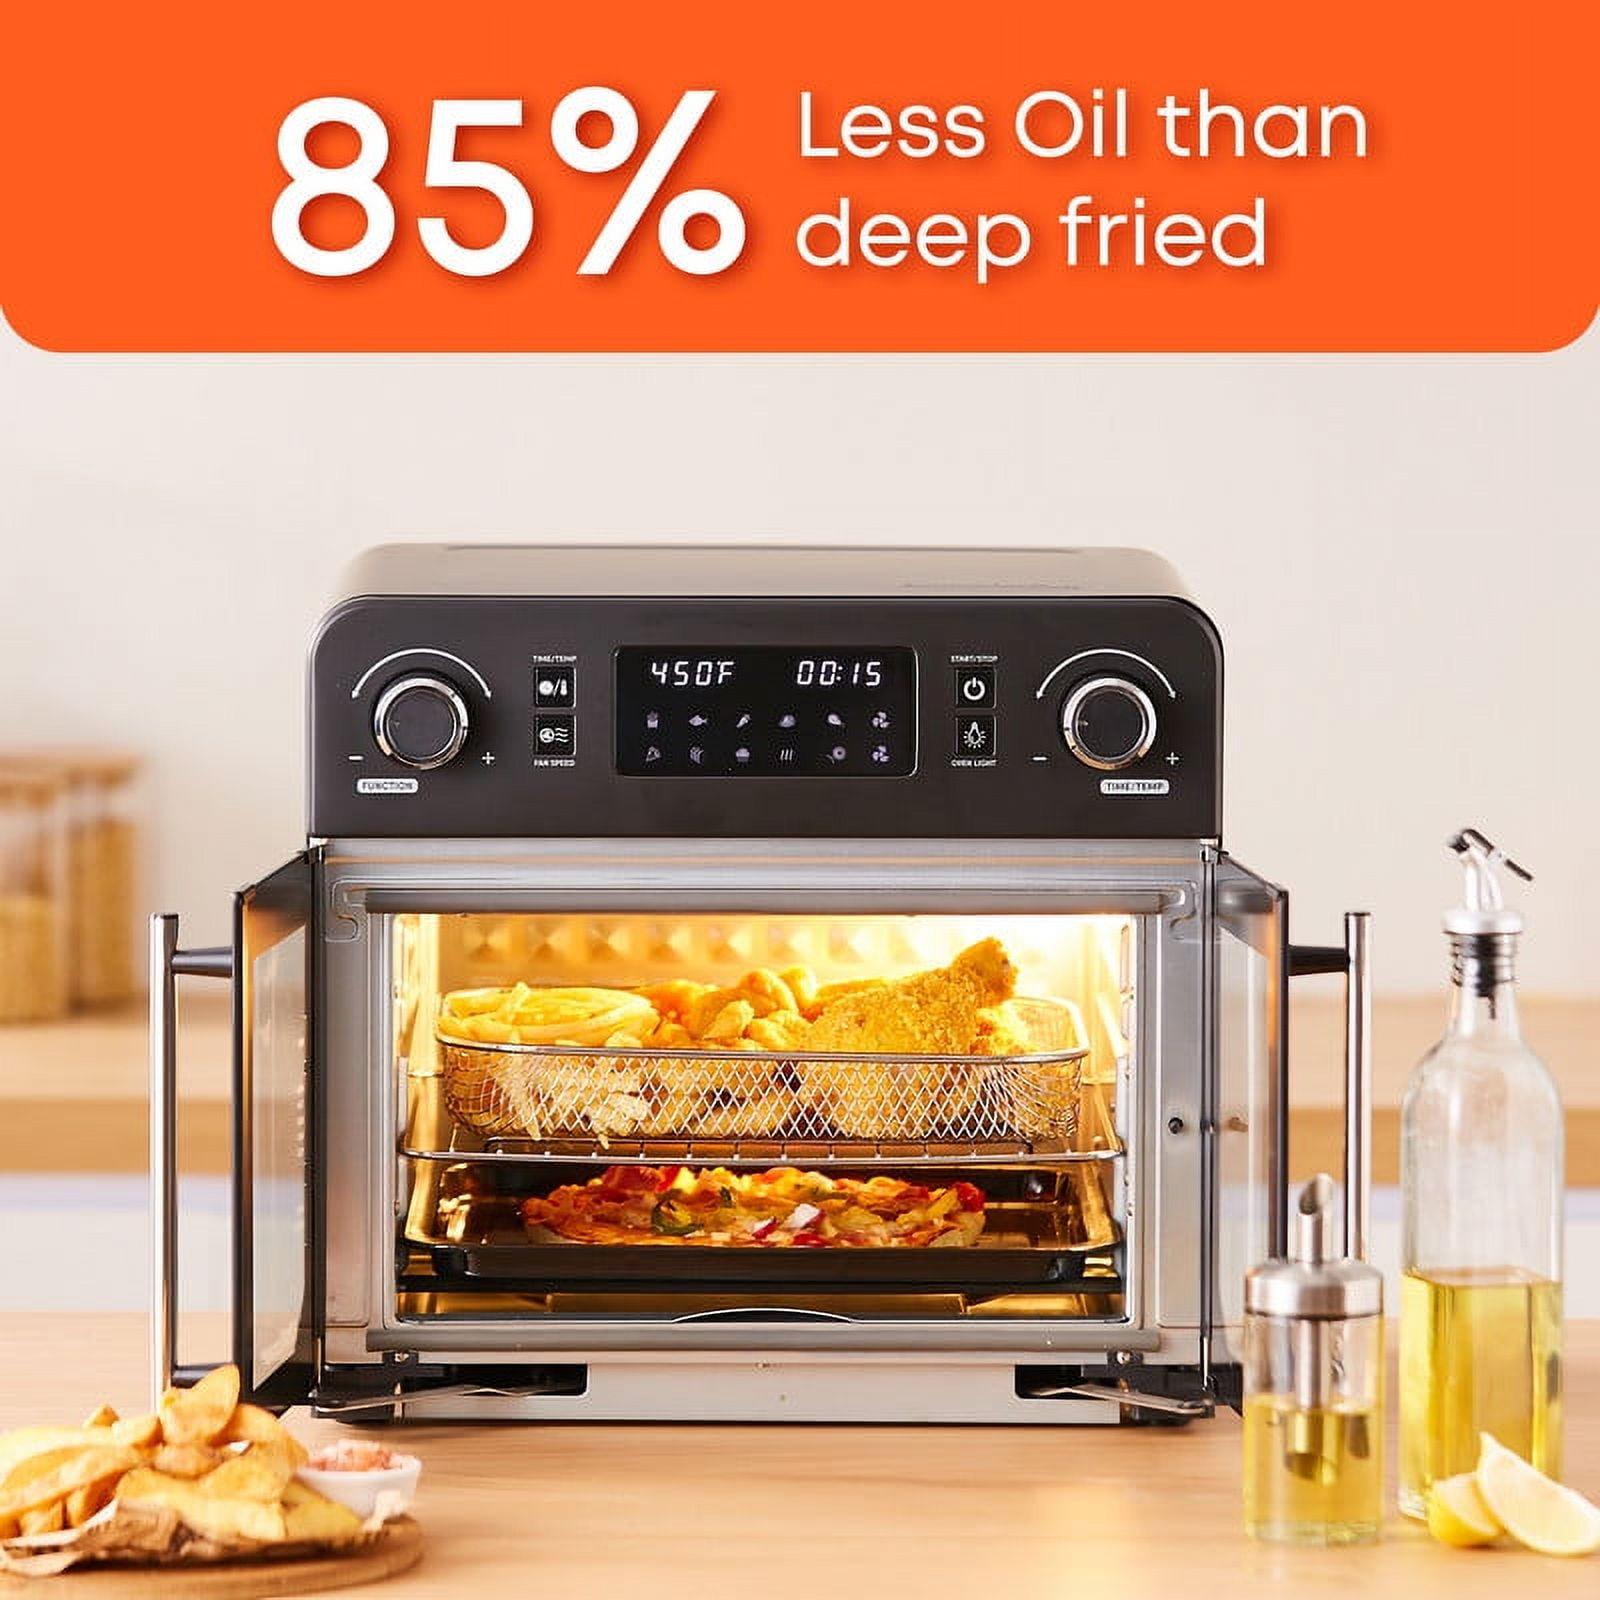 Elite Gourmet 10L Digital Air Fryer Oven, 7 Preset Functions